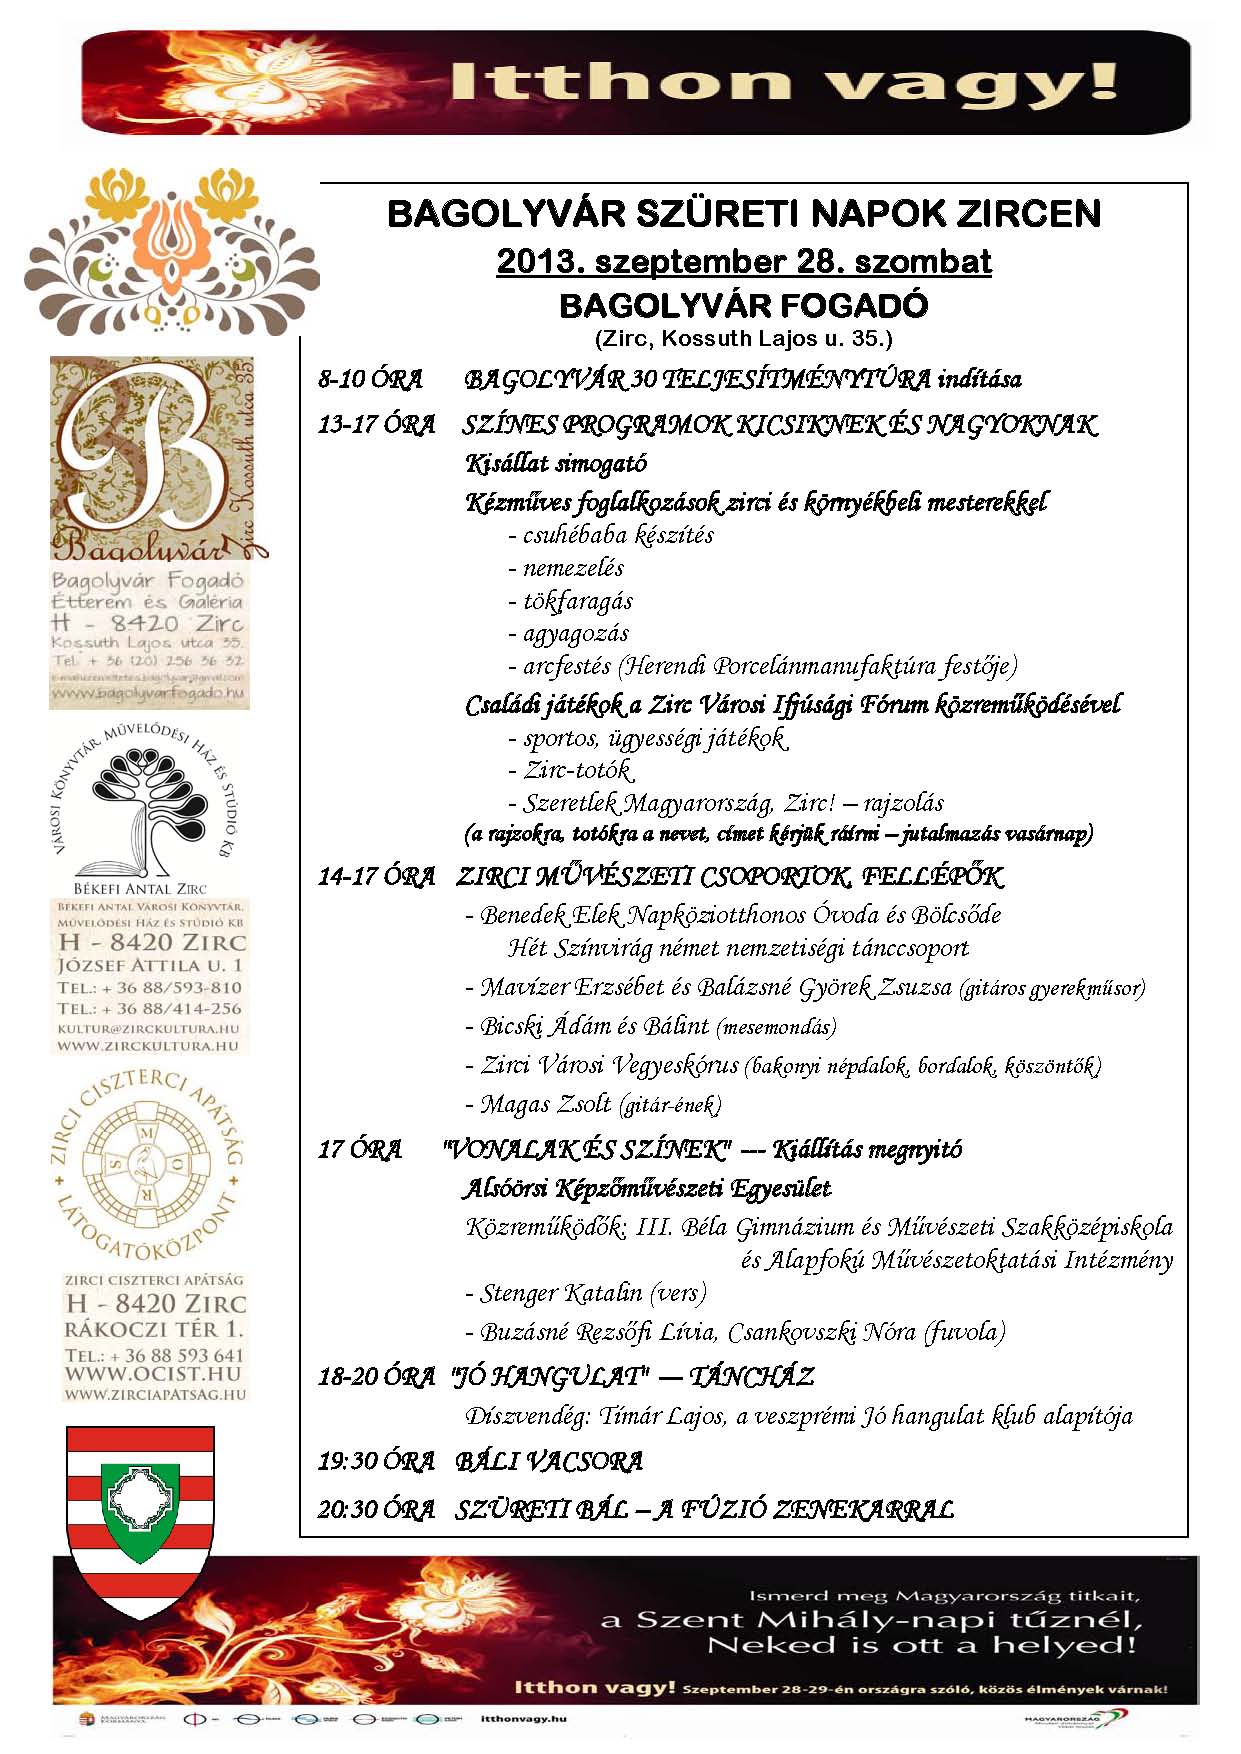 09.28-29.Bagolyvár-MoSzeretlek(részletes programplakát)szombat.jpg